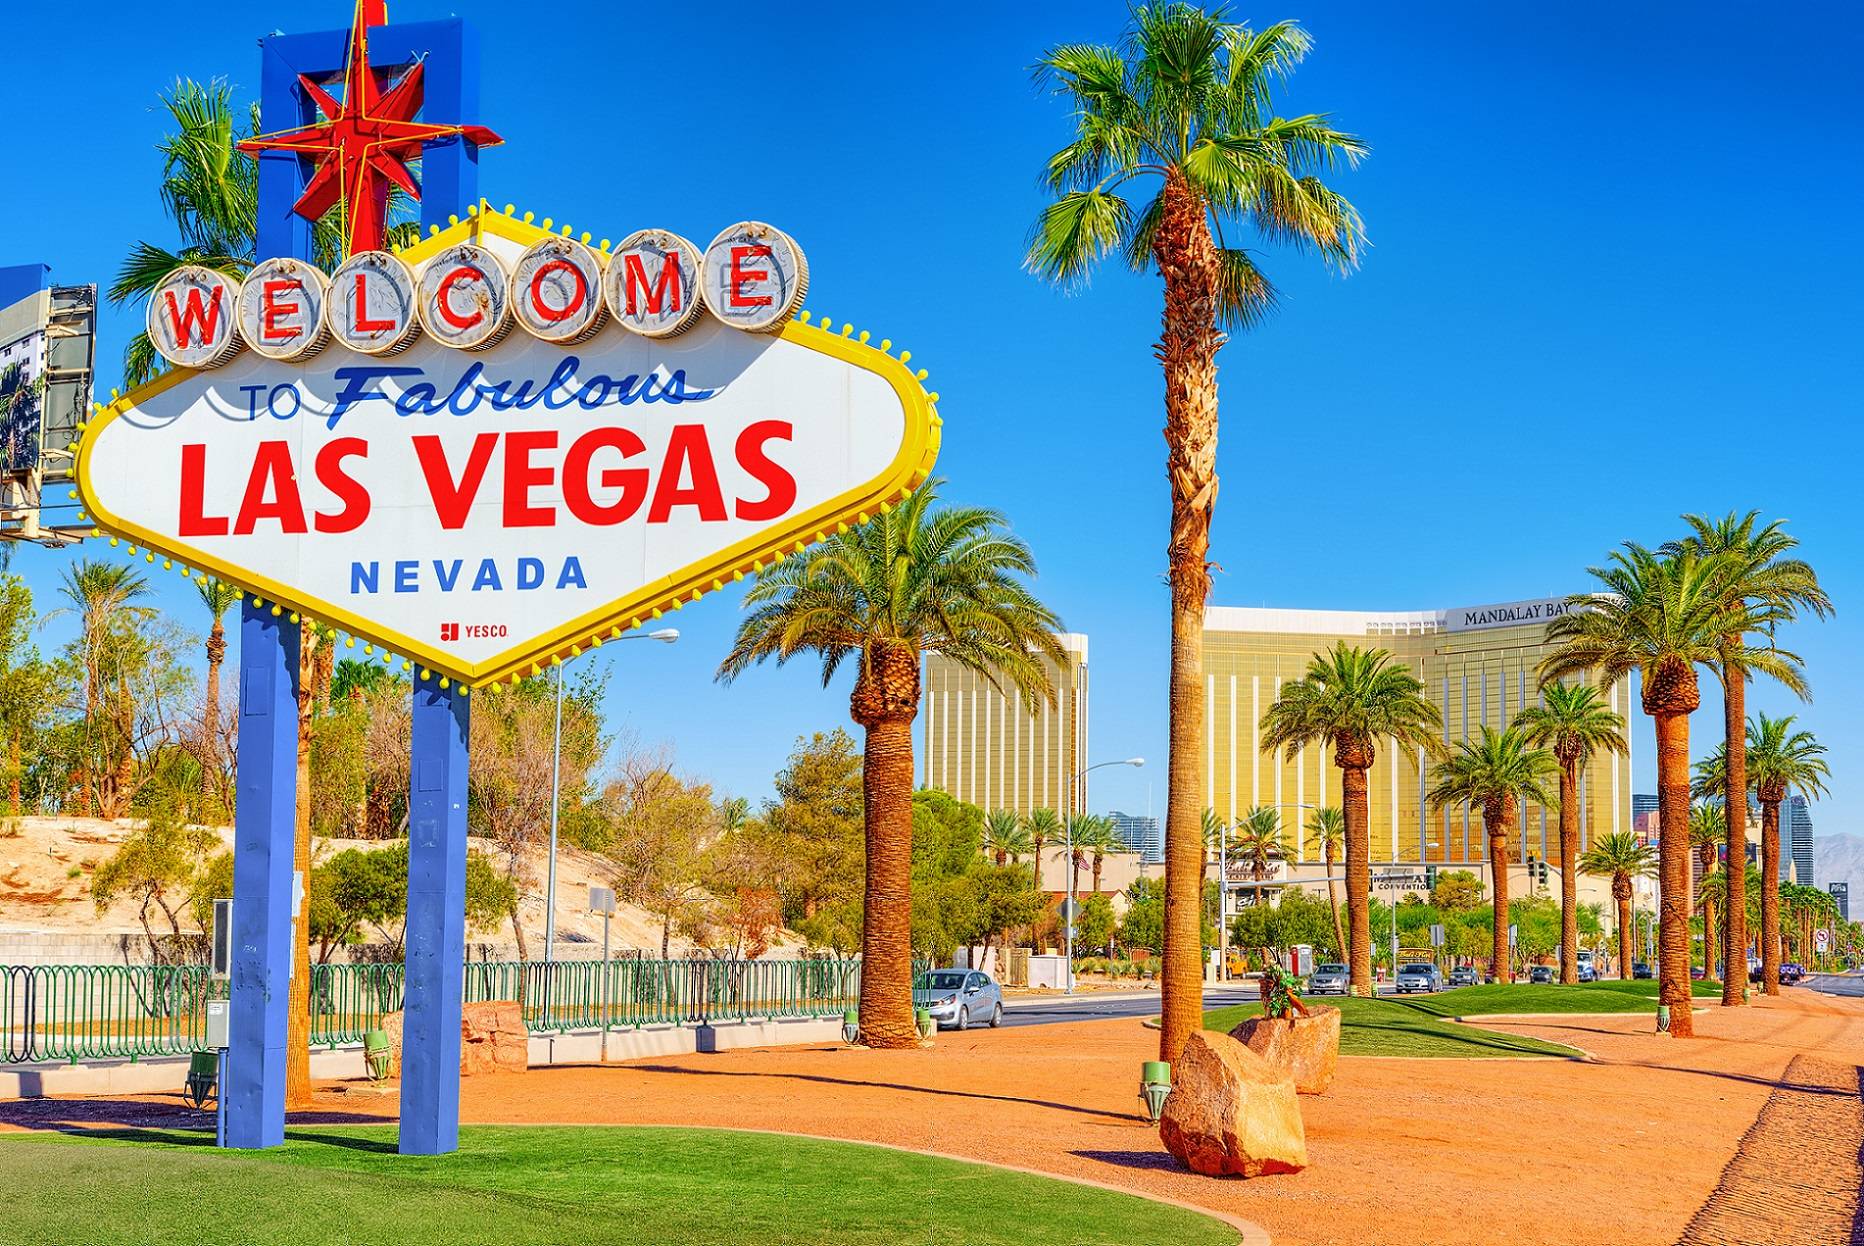 Famous Las Vegas sign